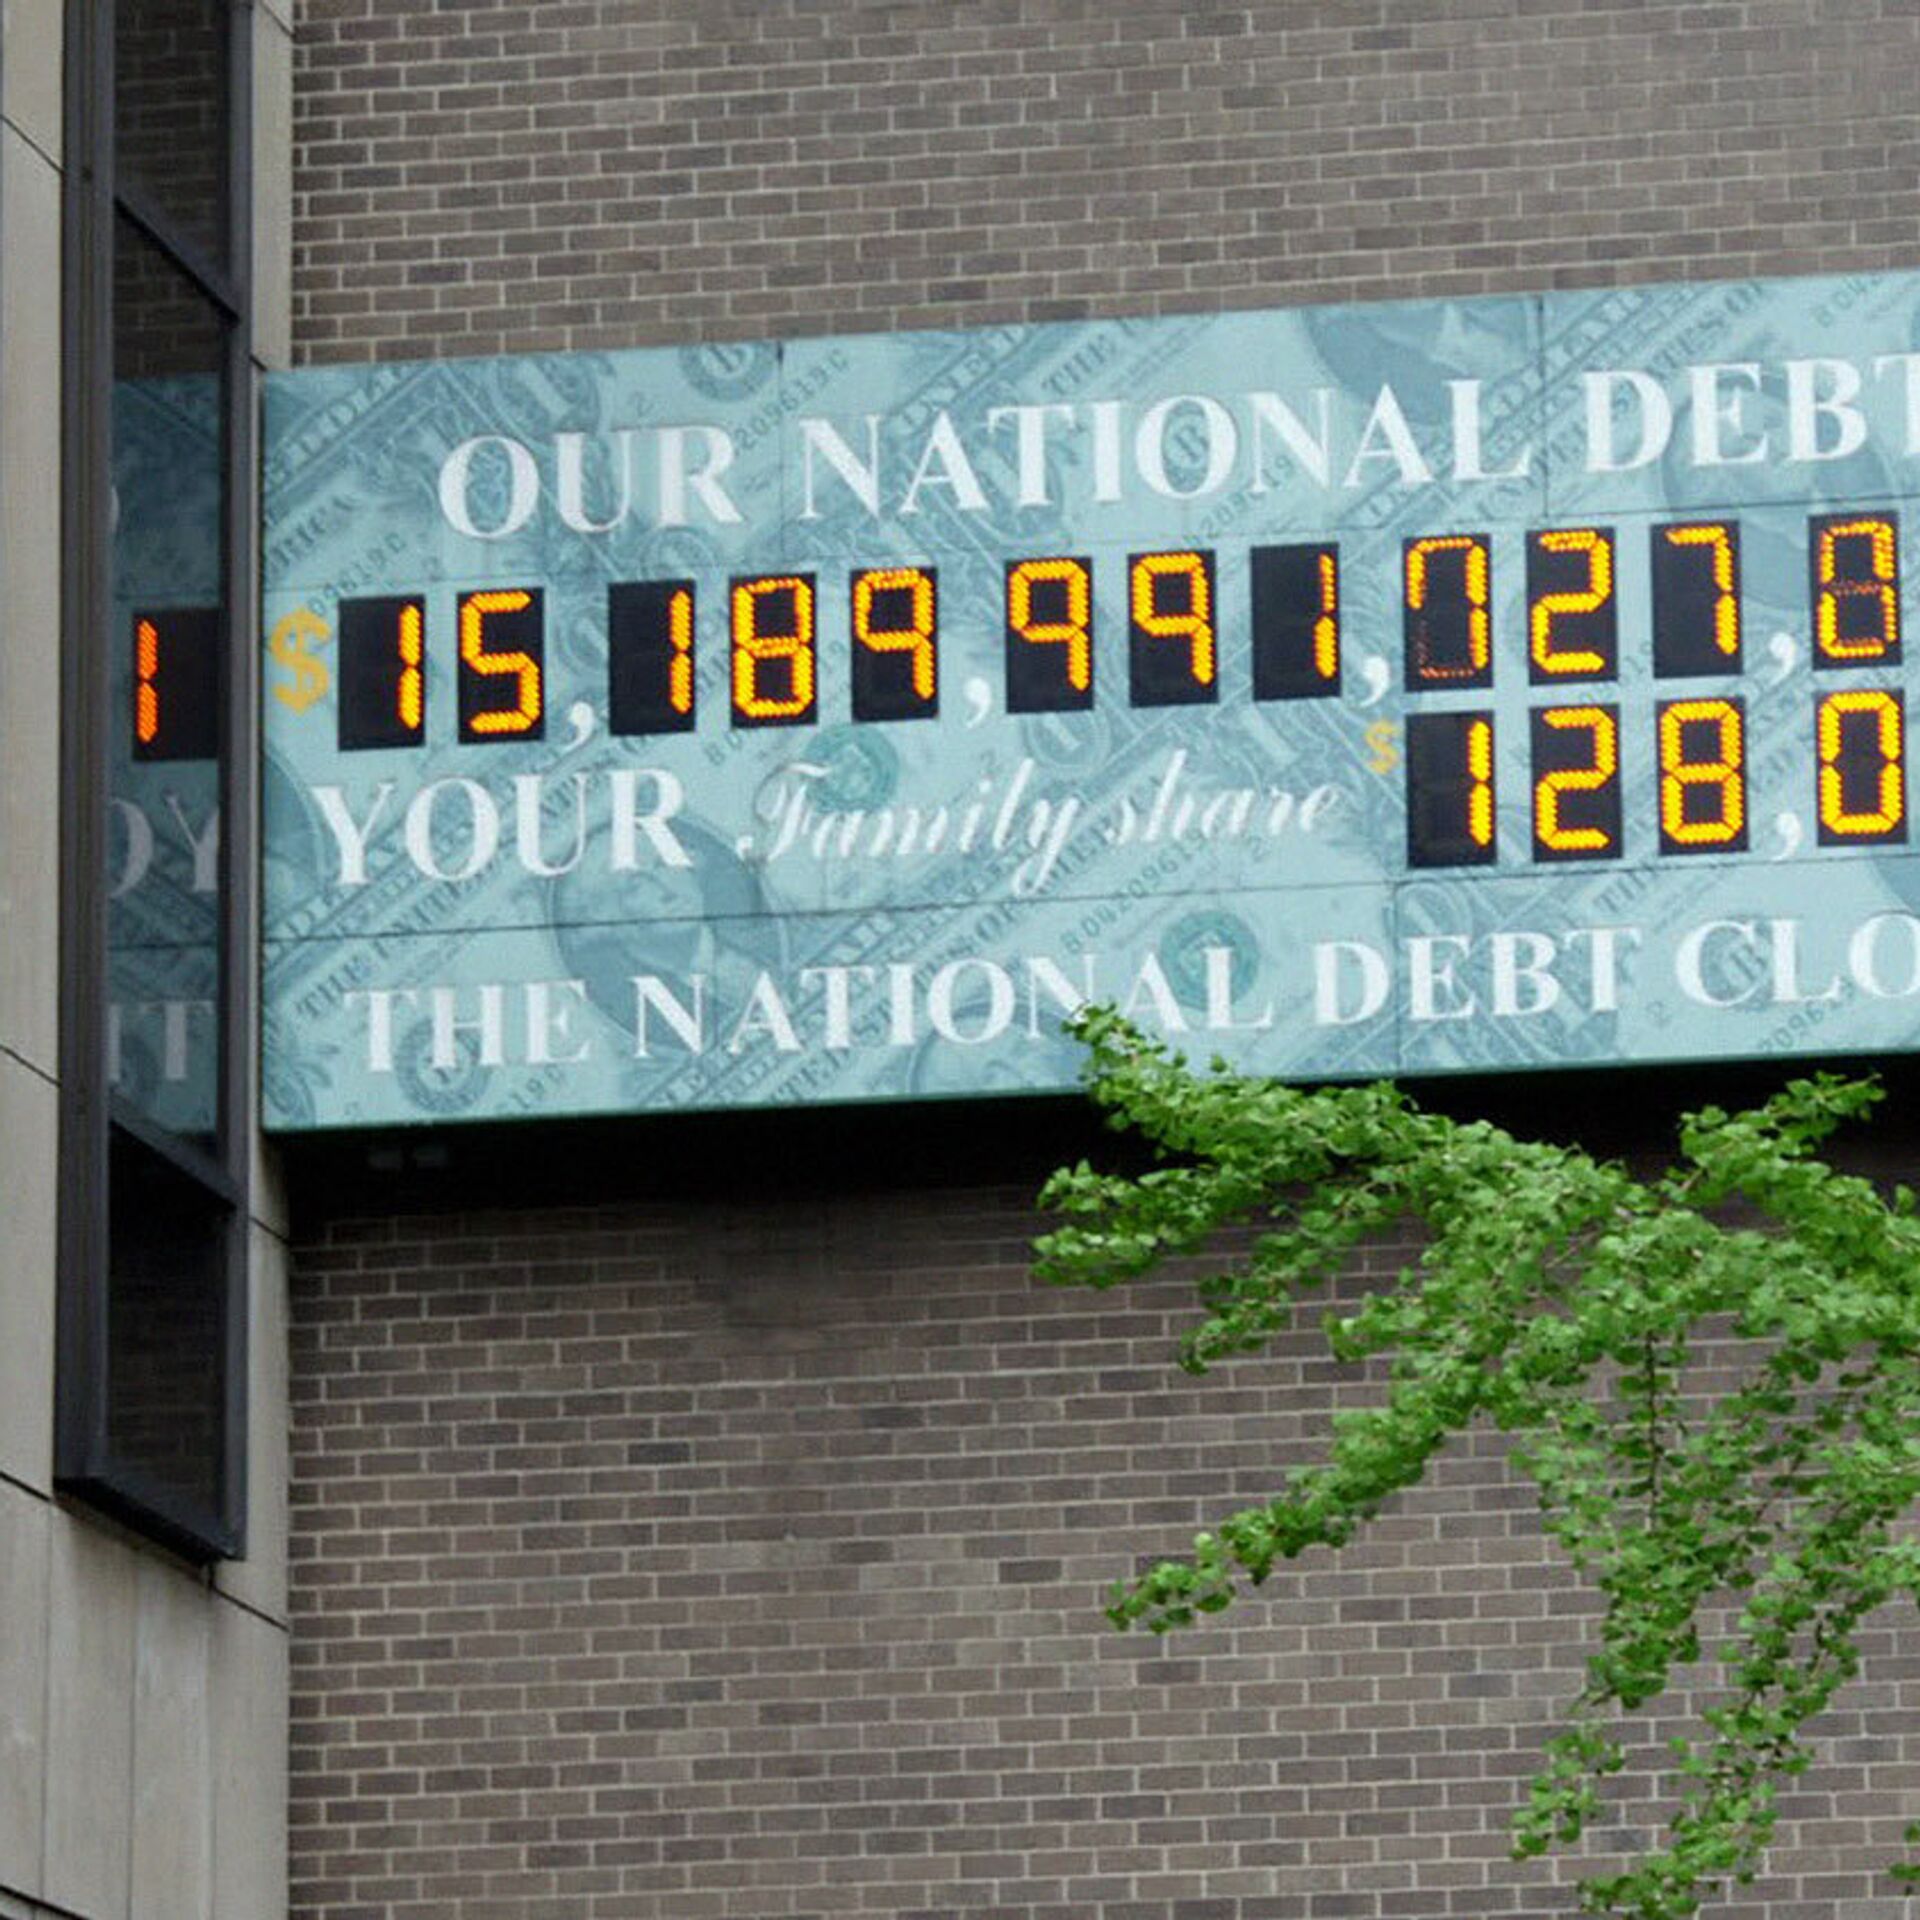 Счетчик долгов в реальном времени. Счётчик национального долга США. Табло госдолга США. Табло национального долга США. Табло с долгом США.